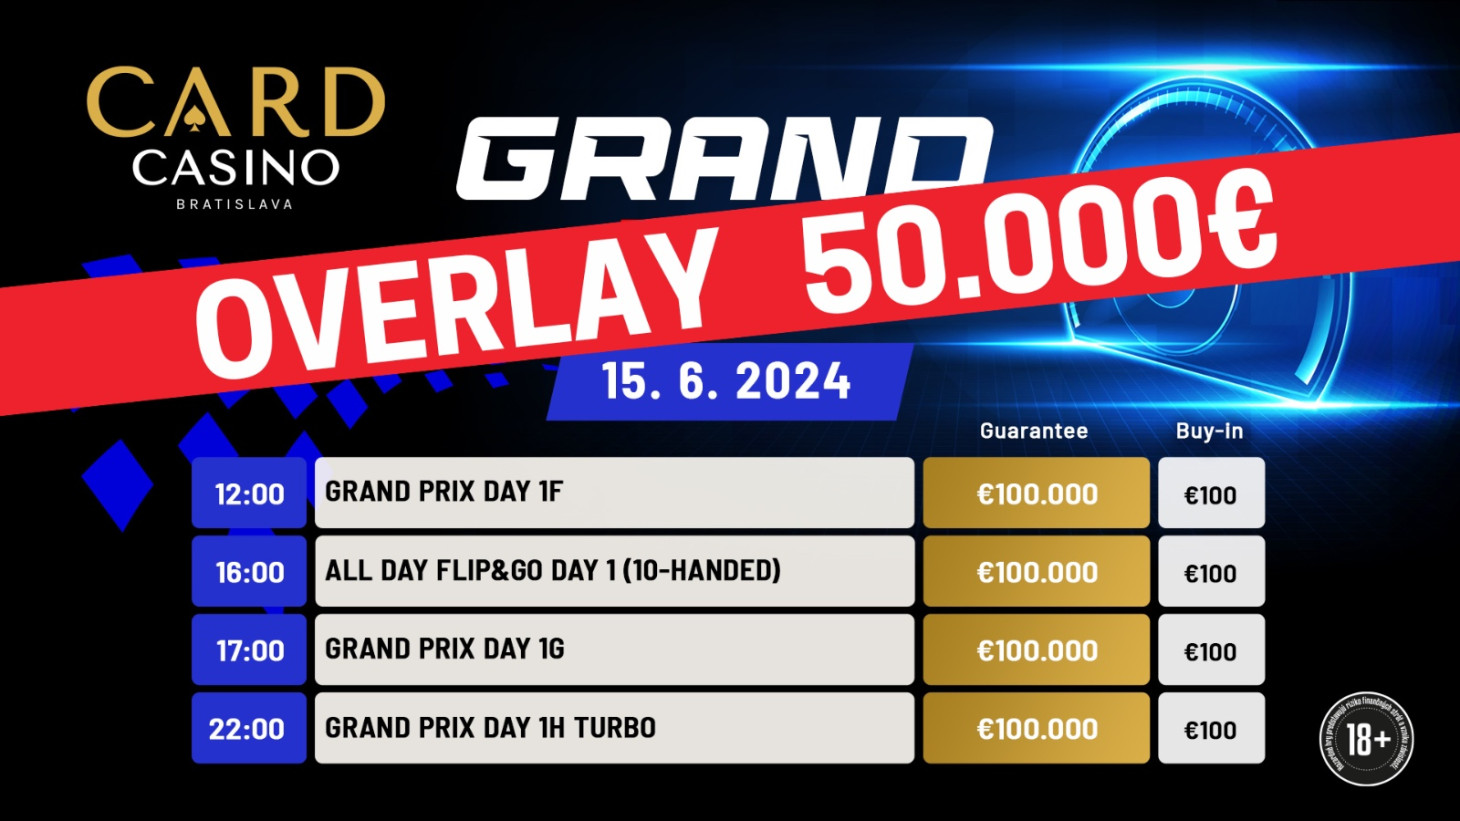 Grand Prix má za sebou úvodné flighty. Turnaju hrozí OVERLAY 50.000€.